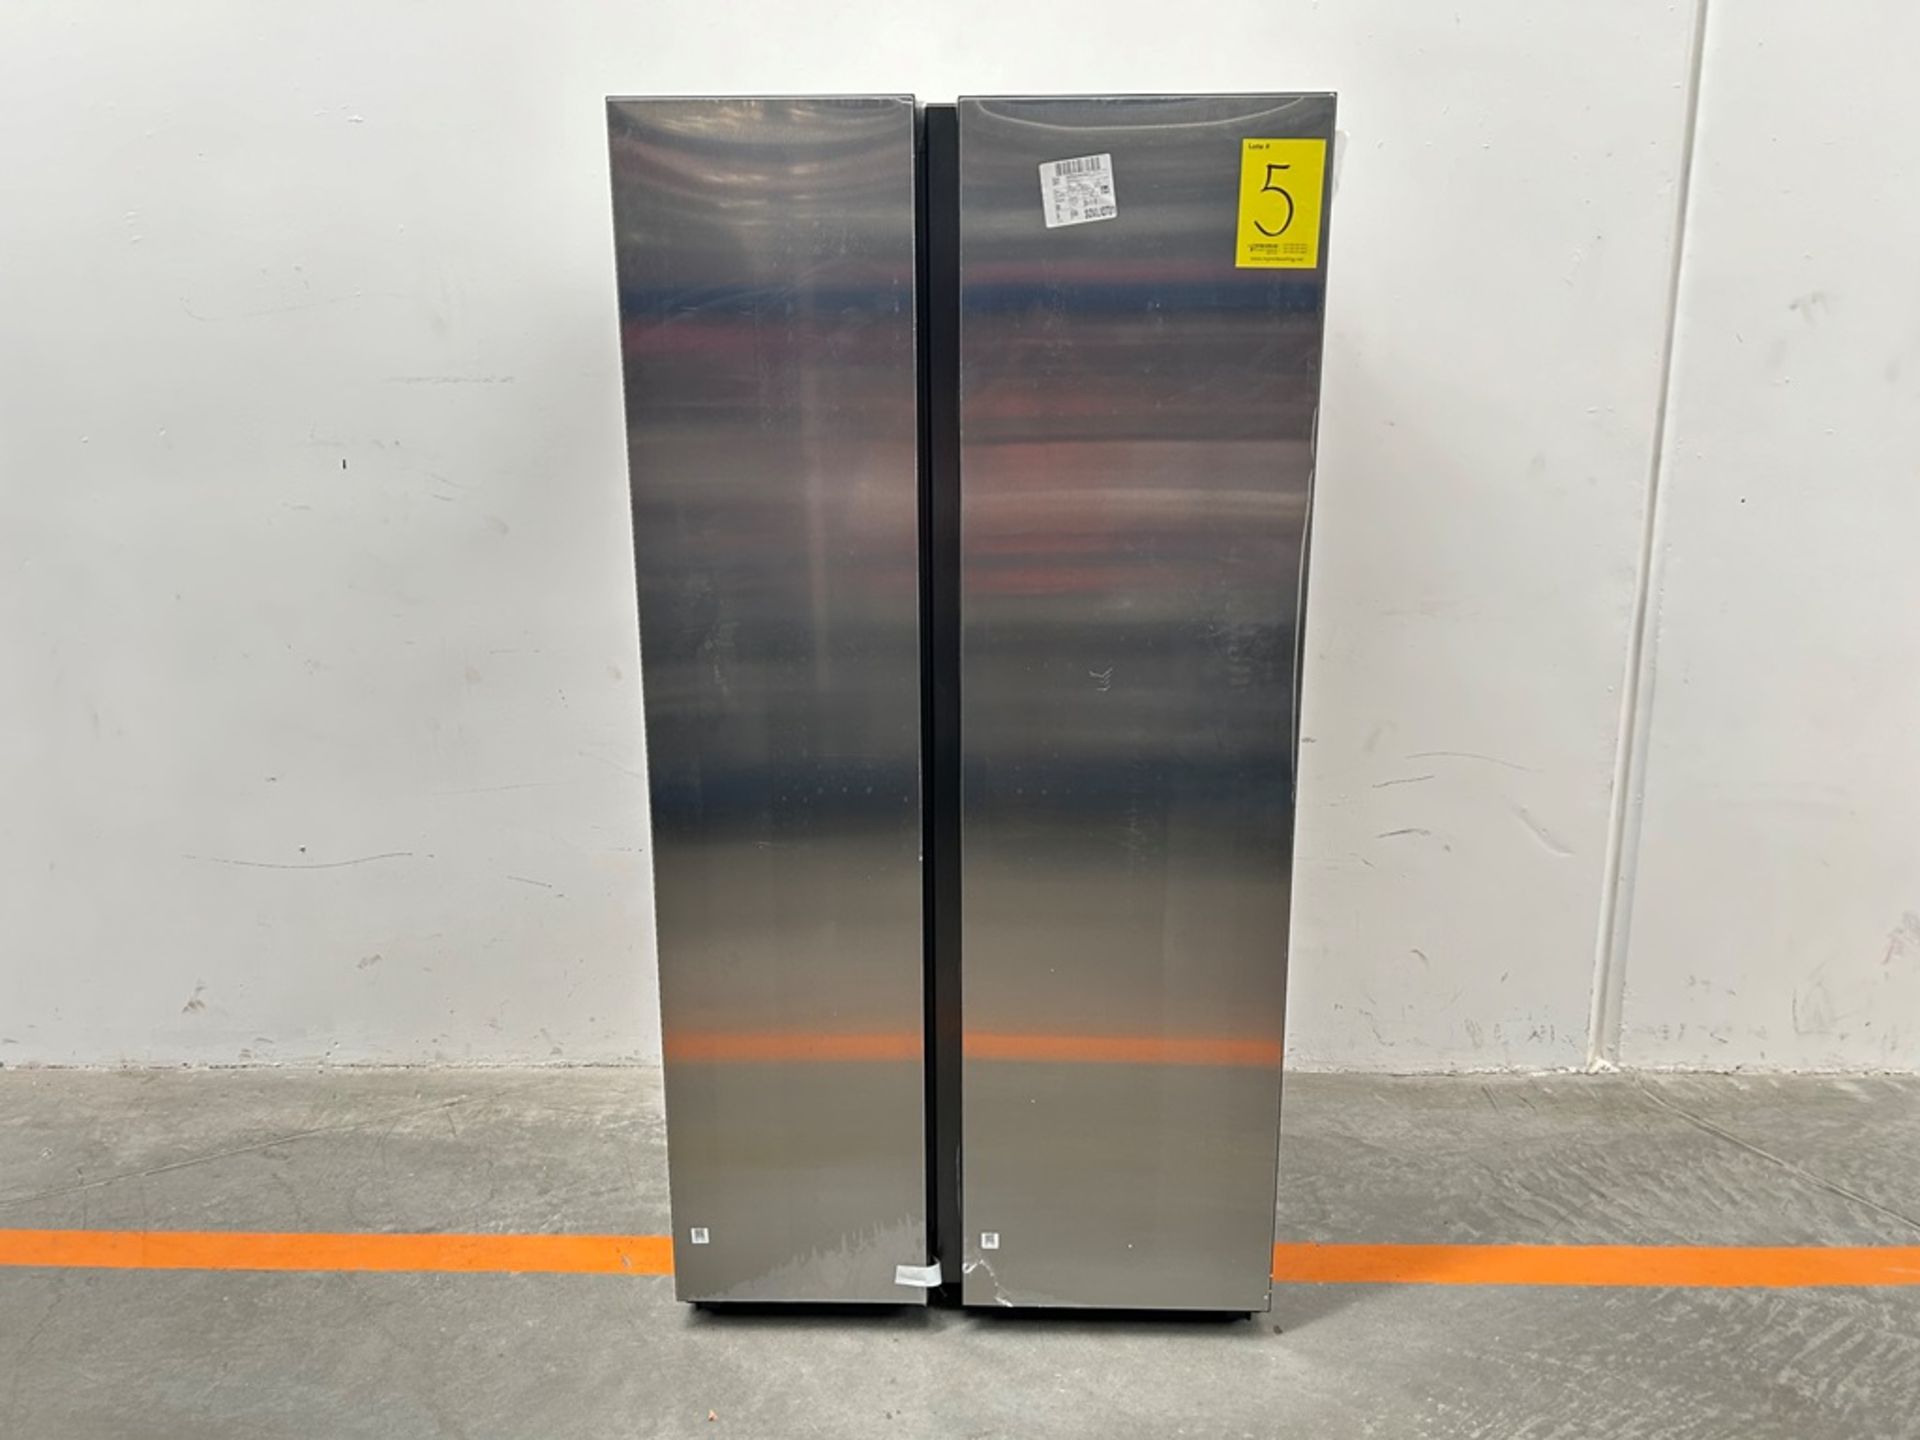 (NUEVO) Refrigerador Marca SAMSUNG, Modelo RS28CB70NAQL, Serie 1071N, Color GRIS